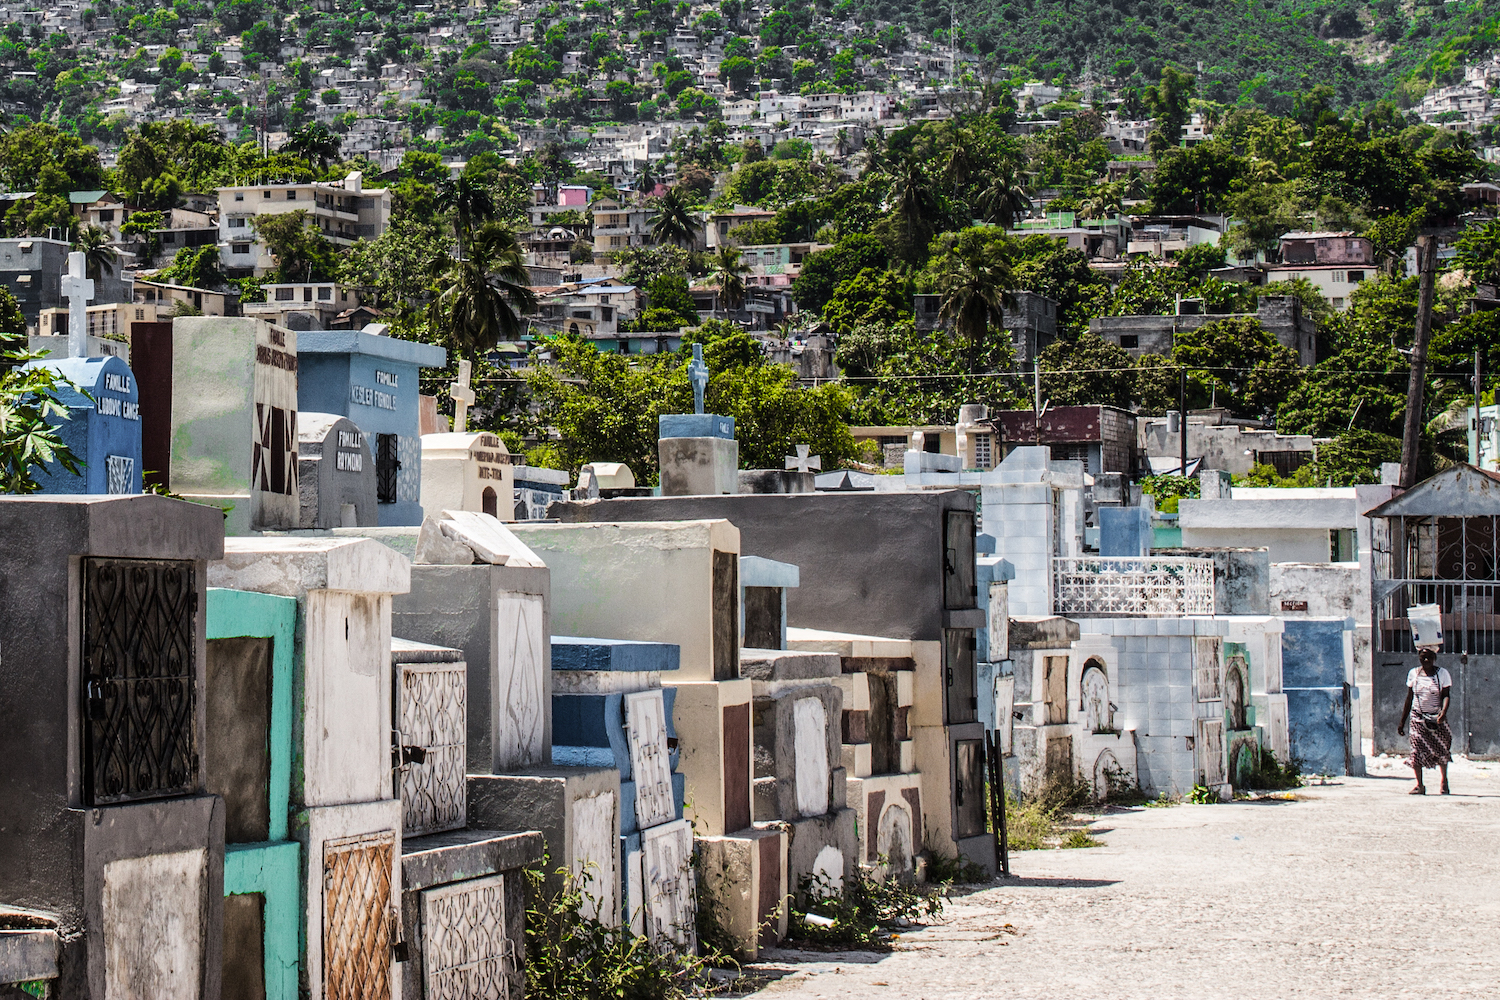 A woman walks between the rows of graves at Le Grand Cimetière. Port-au-Prince, Haiti. © Darmon Richter http://www.thebohemianblog.com/2015/04/haitian-vodou-port-au-prince.html